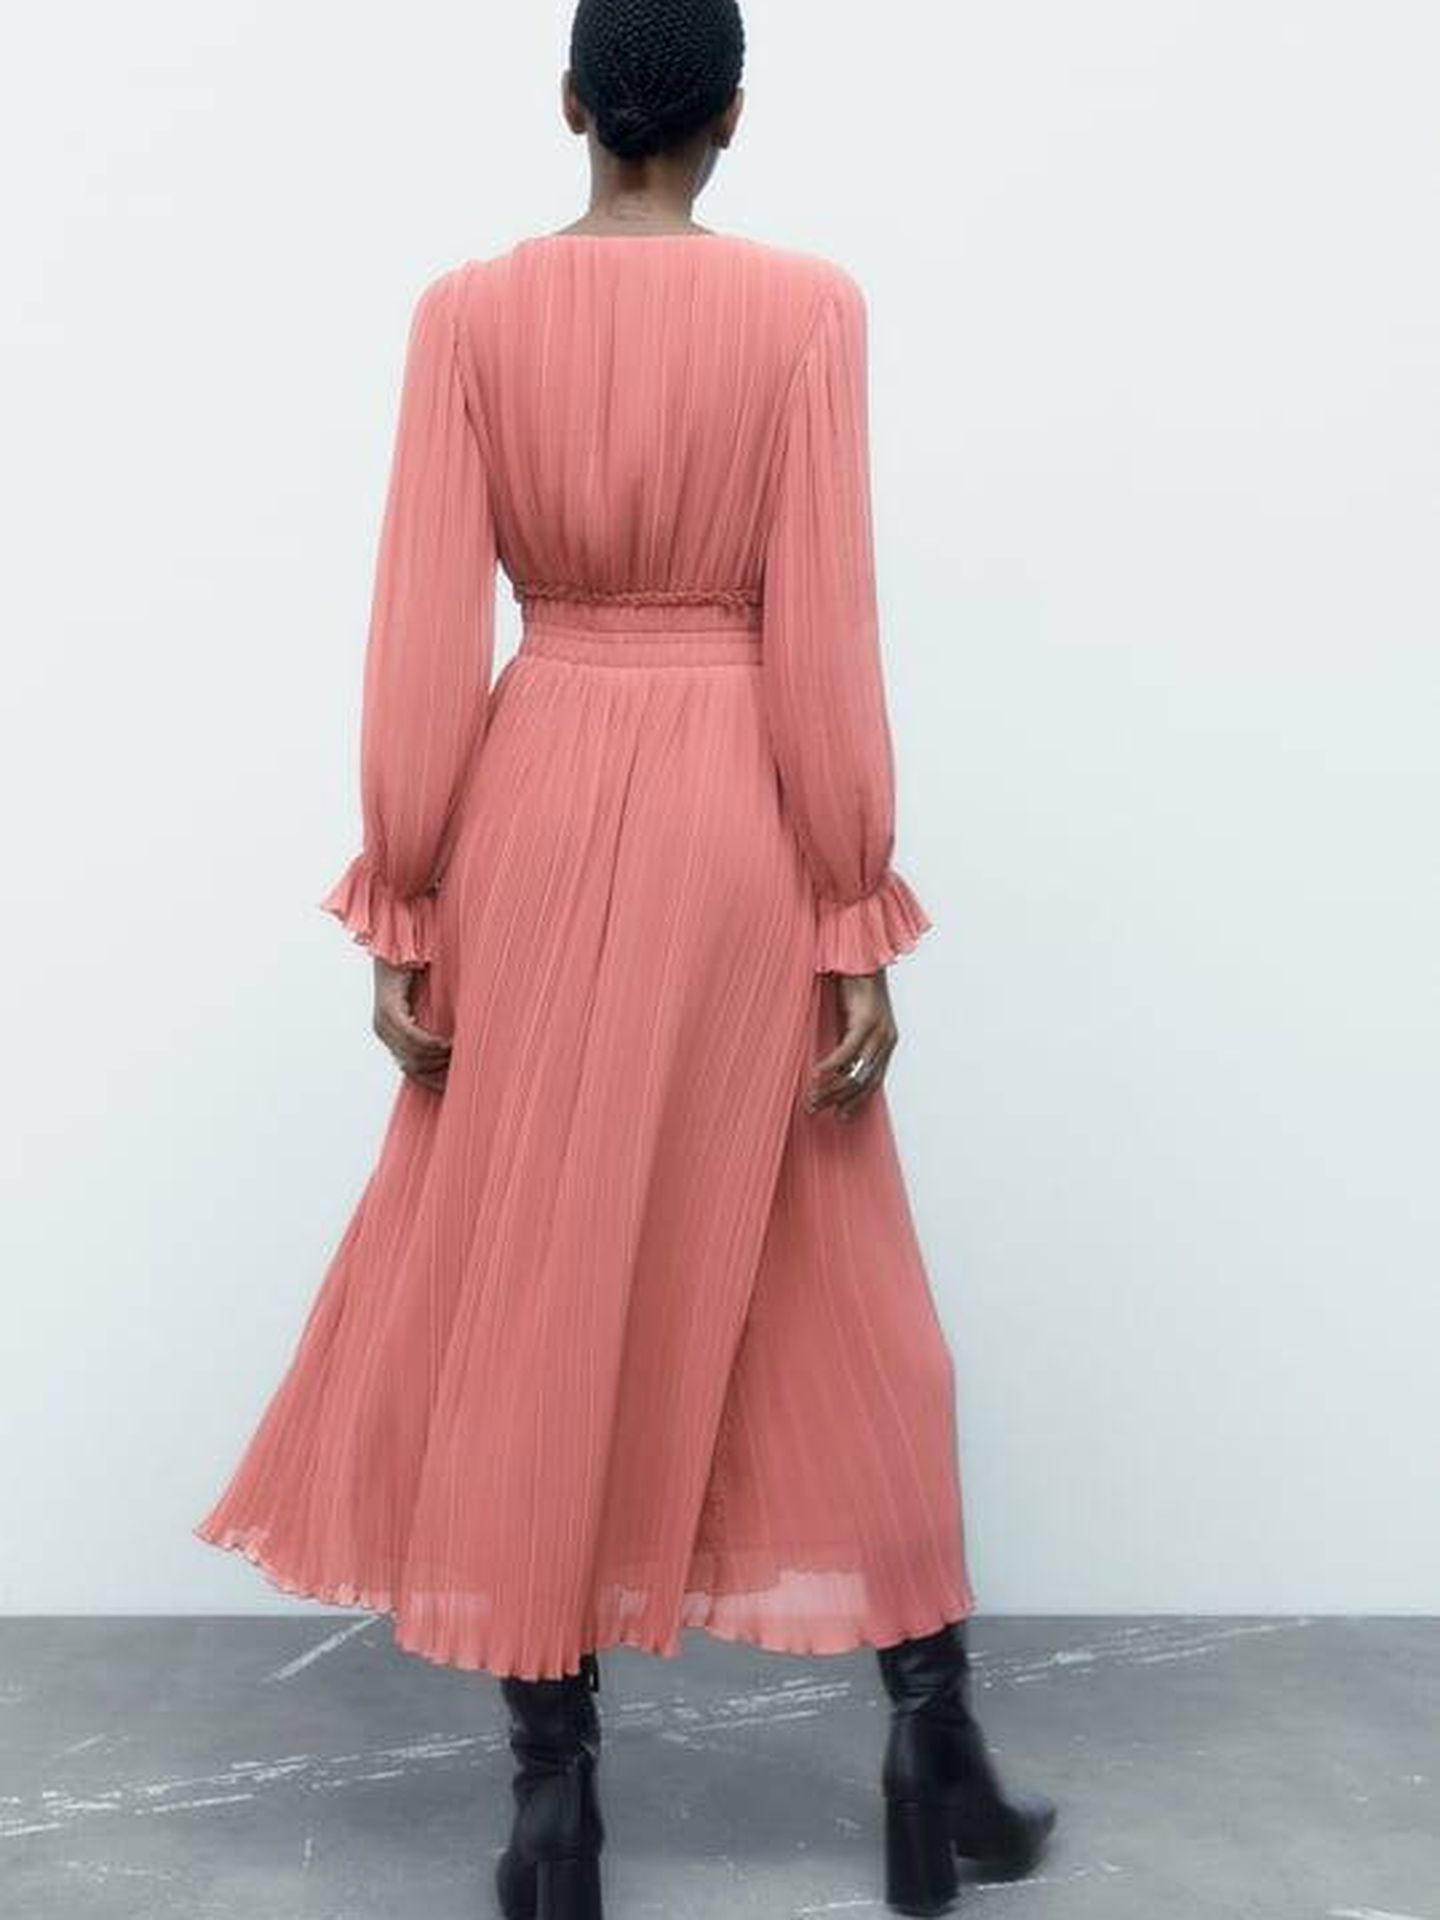 Amor a primera vista por este vestido plisado de Zara. (Cortesía)